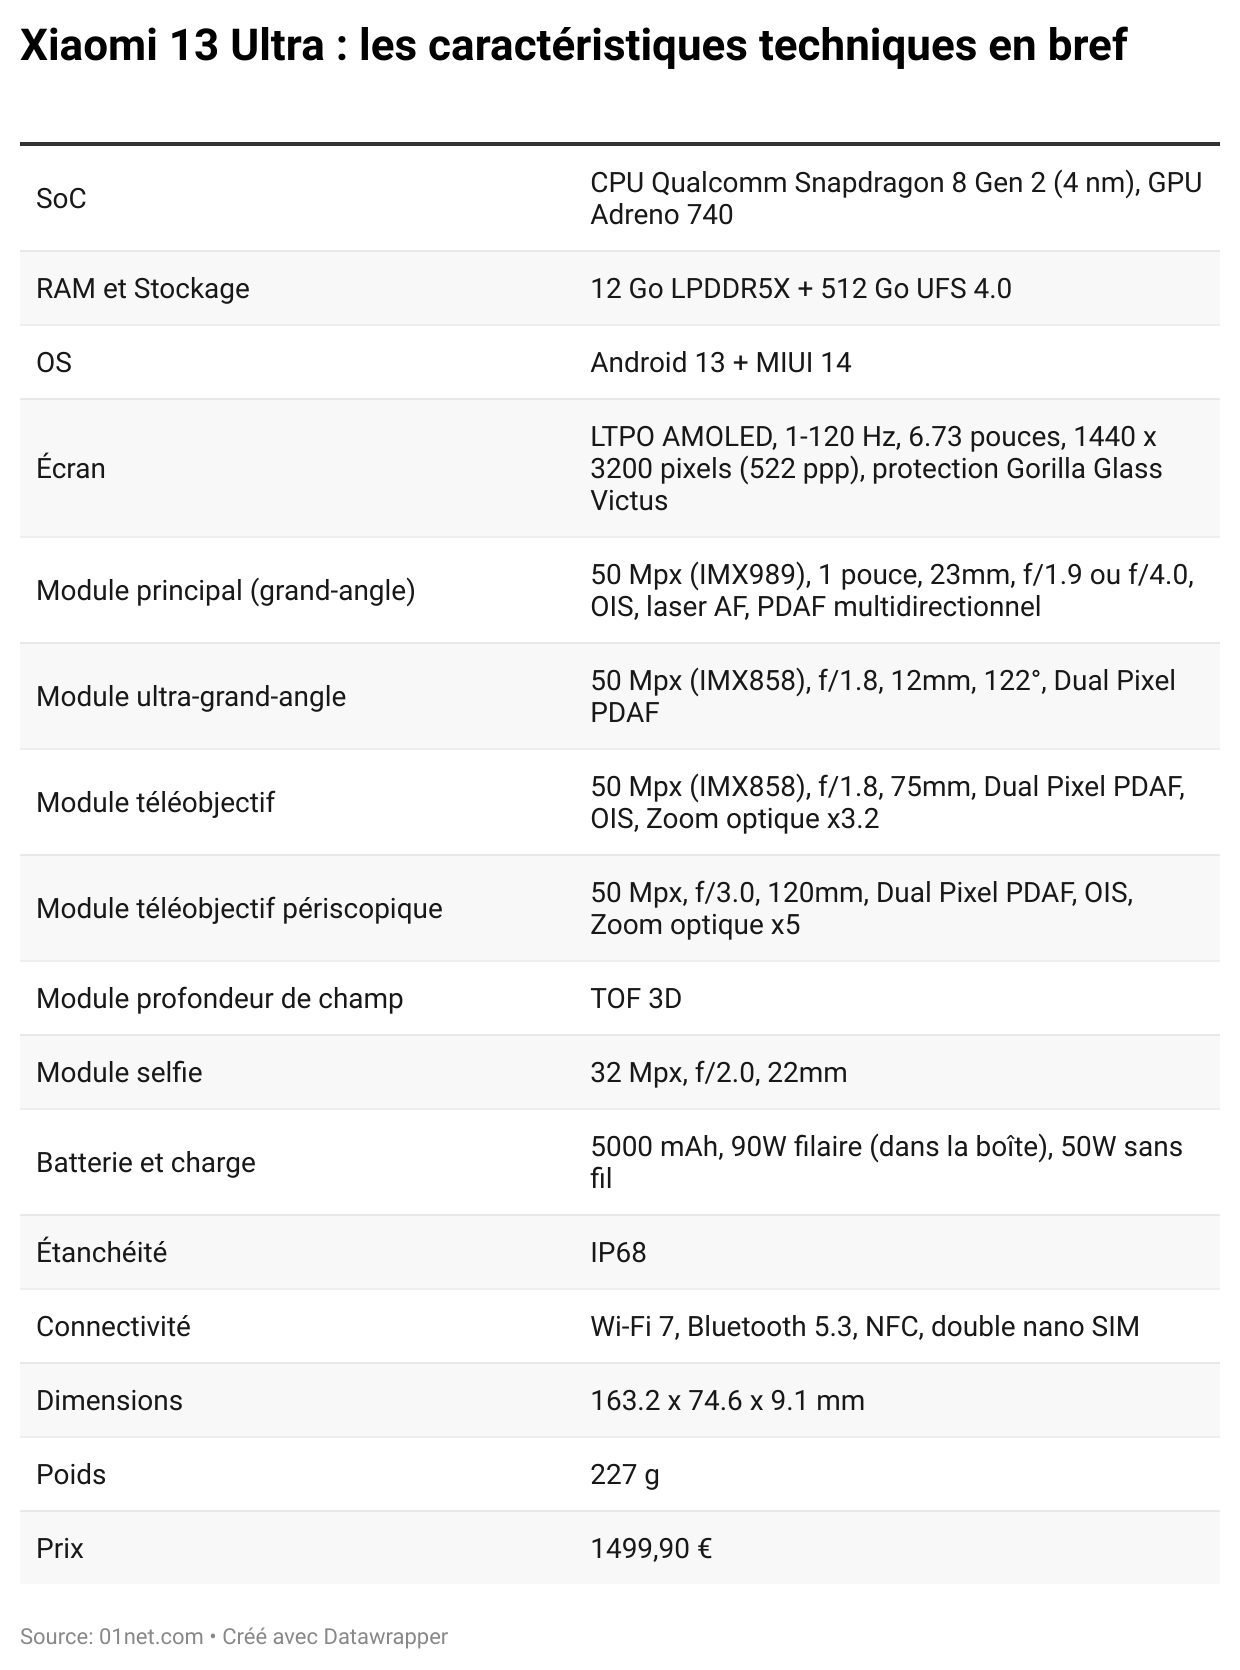 ویژگی های ورق فنی Xiaomi 13 فوق العاده